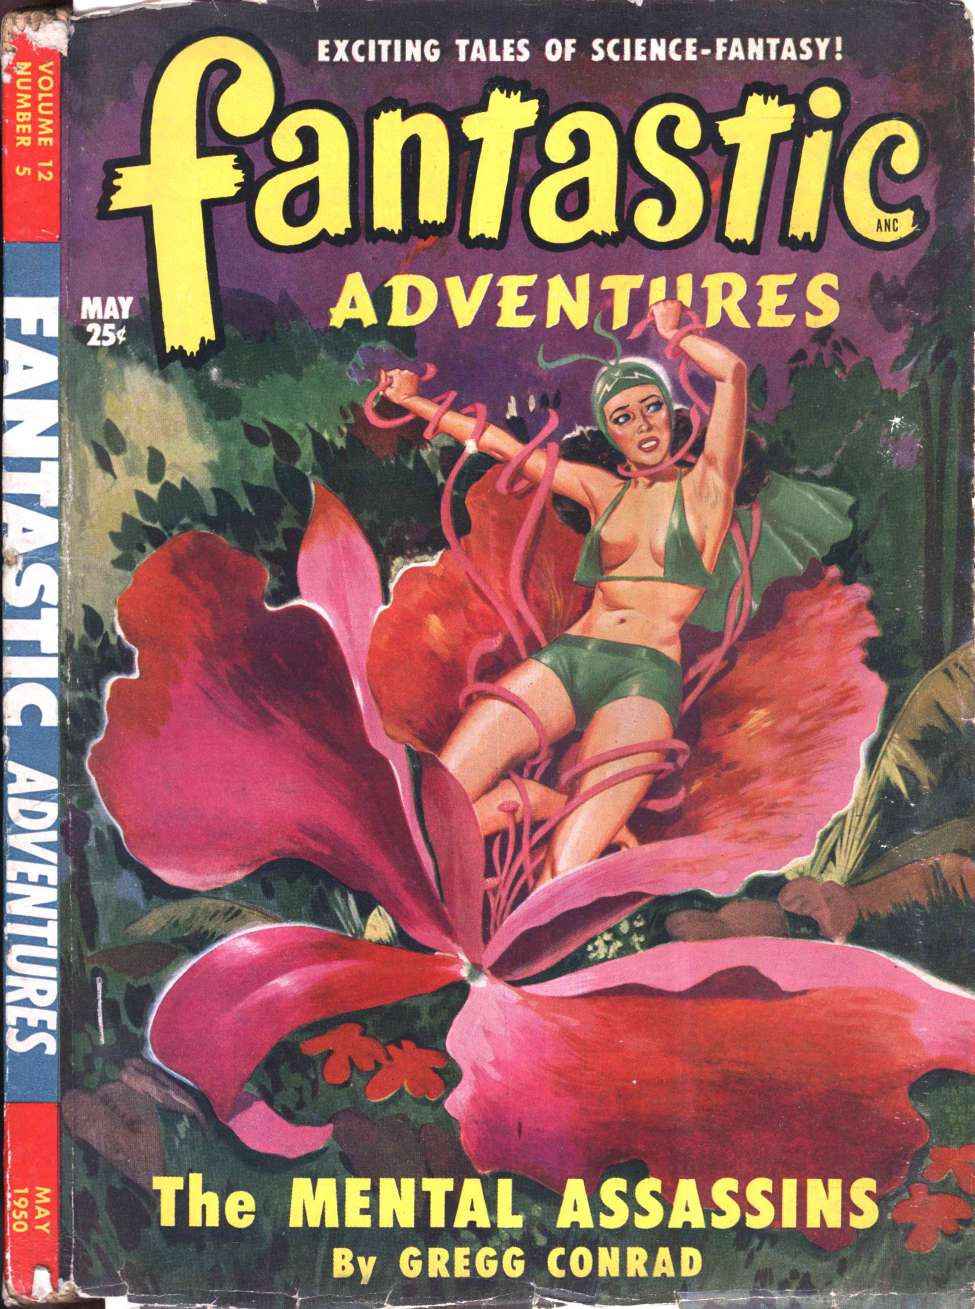 Comic Book Cover For Fantastic Adventures v12 5 - The Mental Assassins - Gregg Conrad